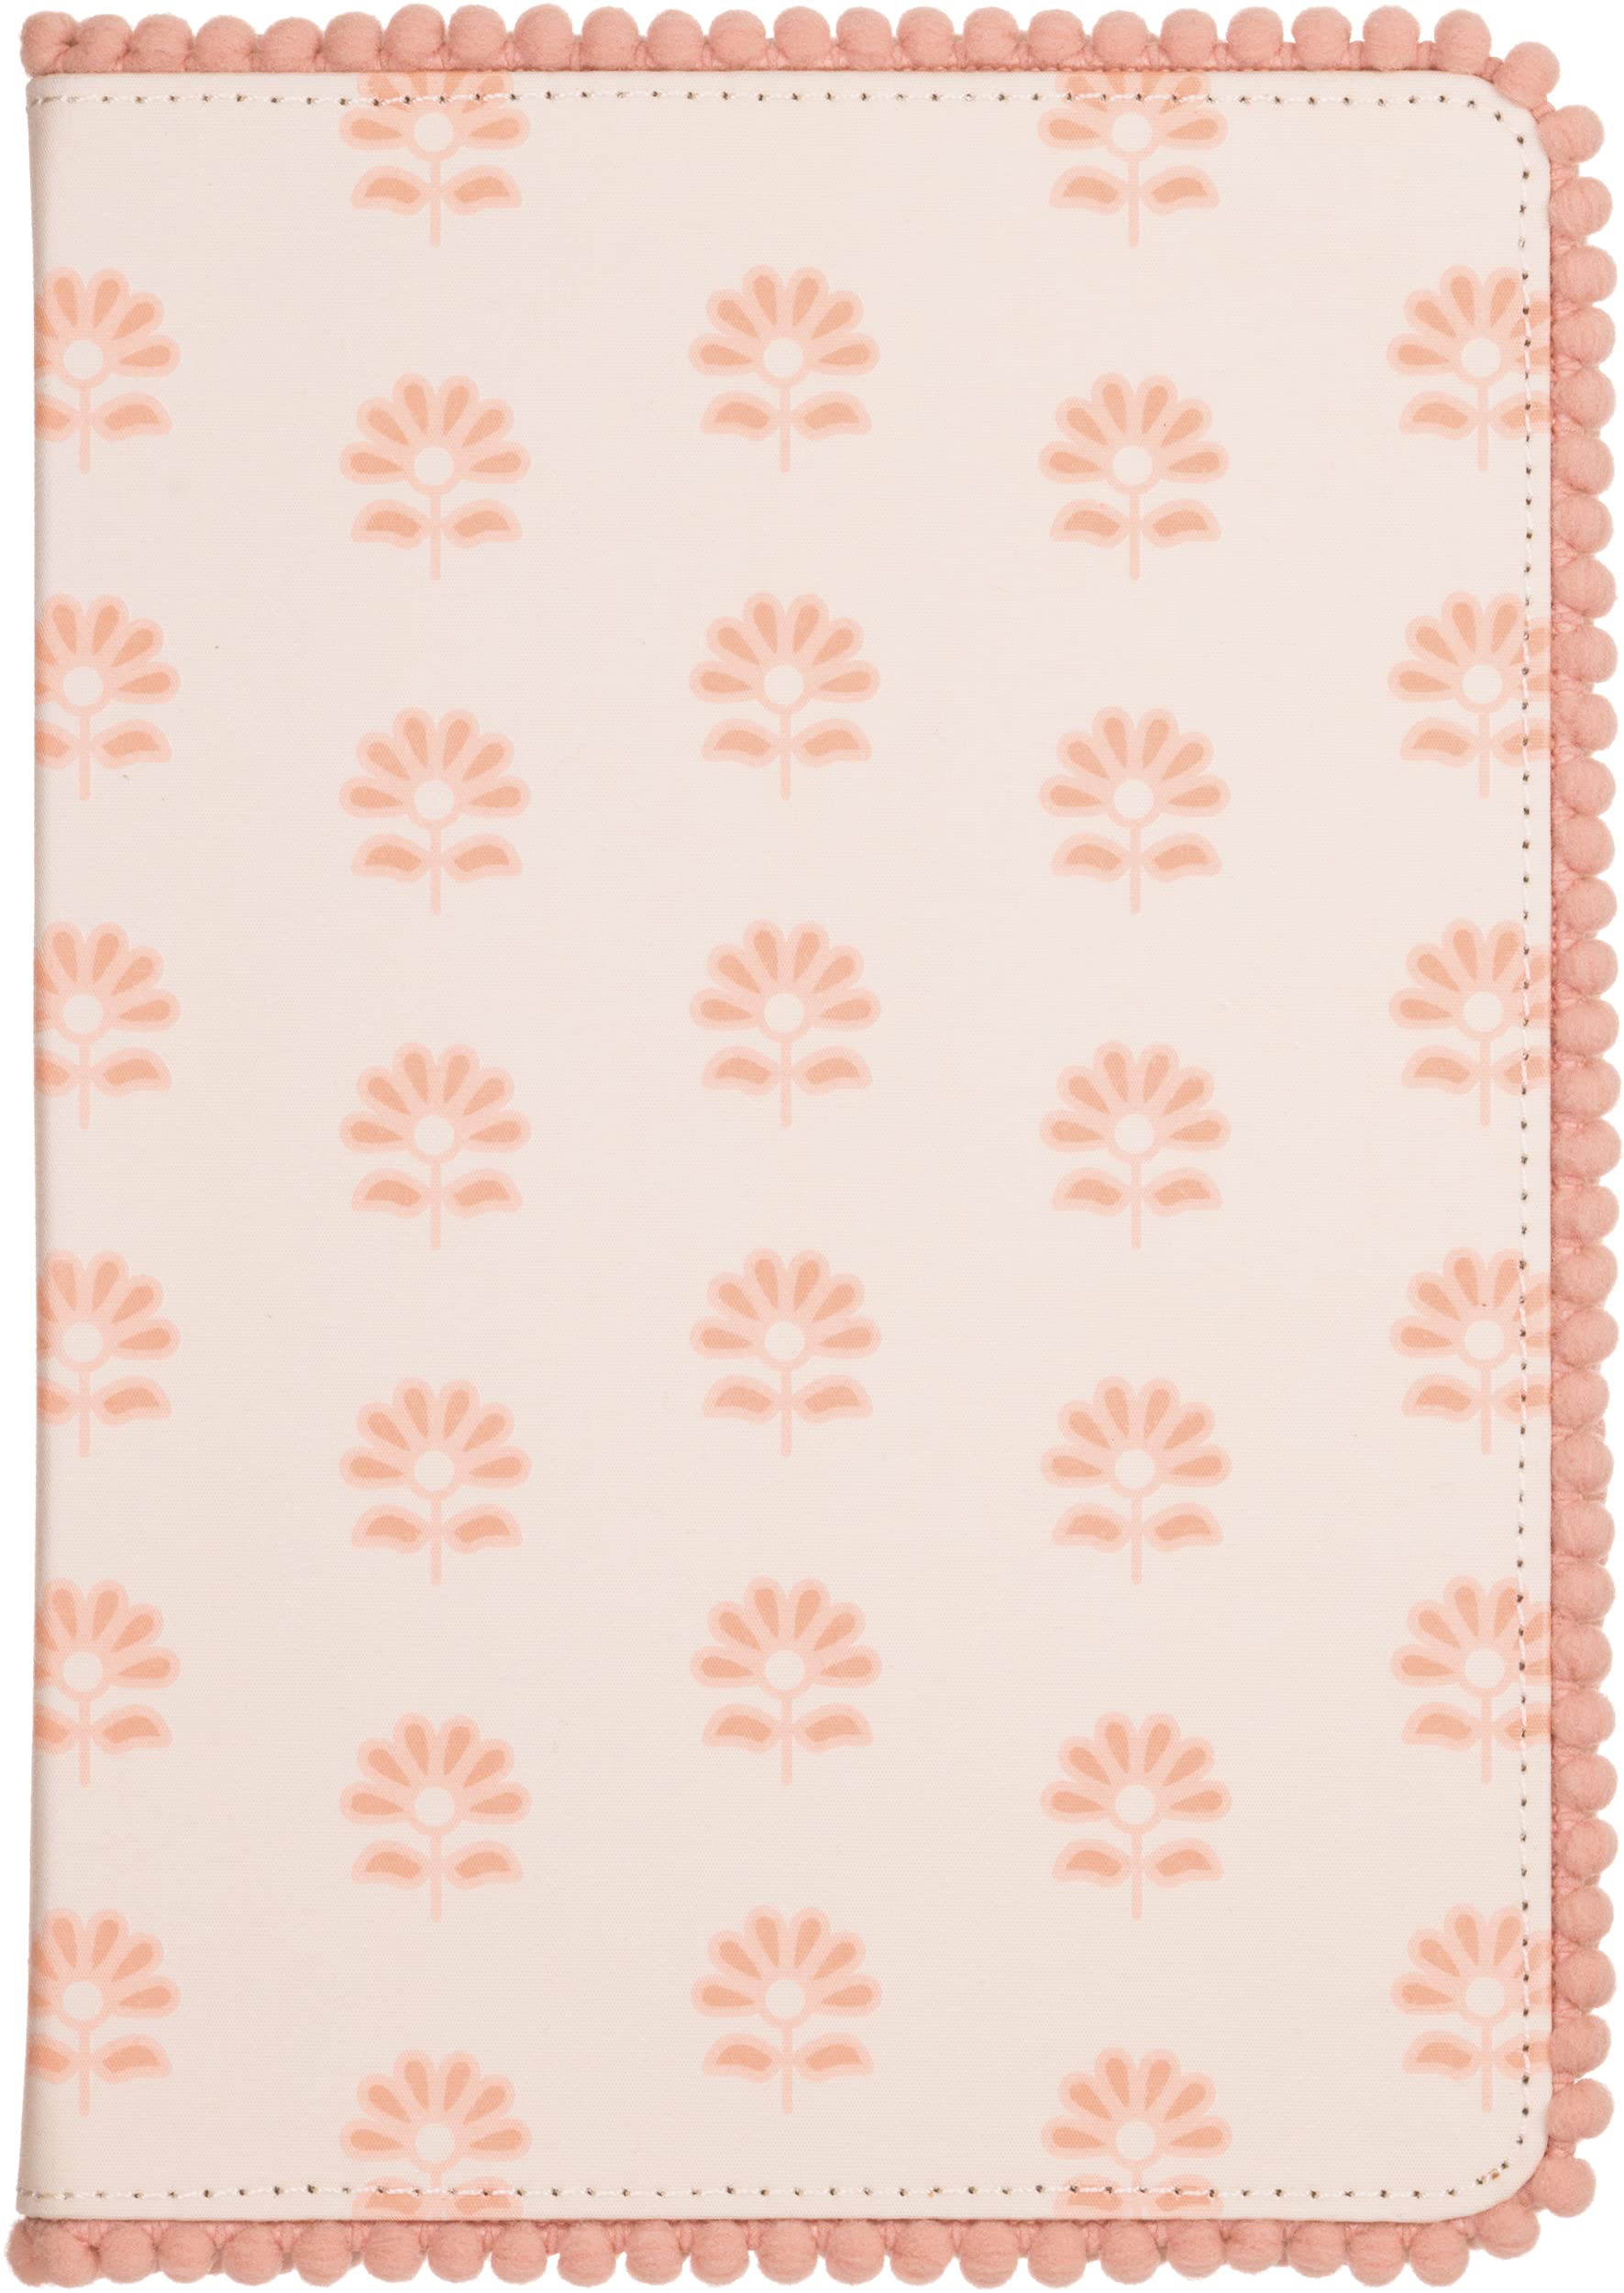 Eccolo Pom Pom Notebook Journal Blockprint Floral